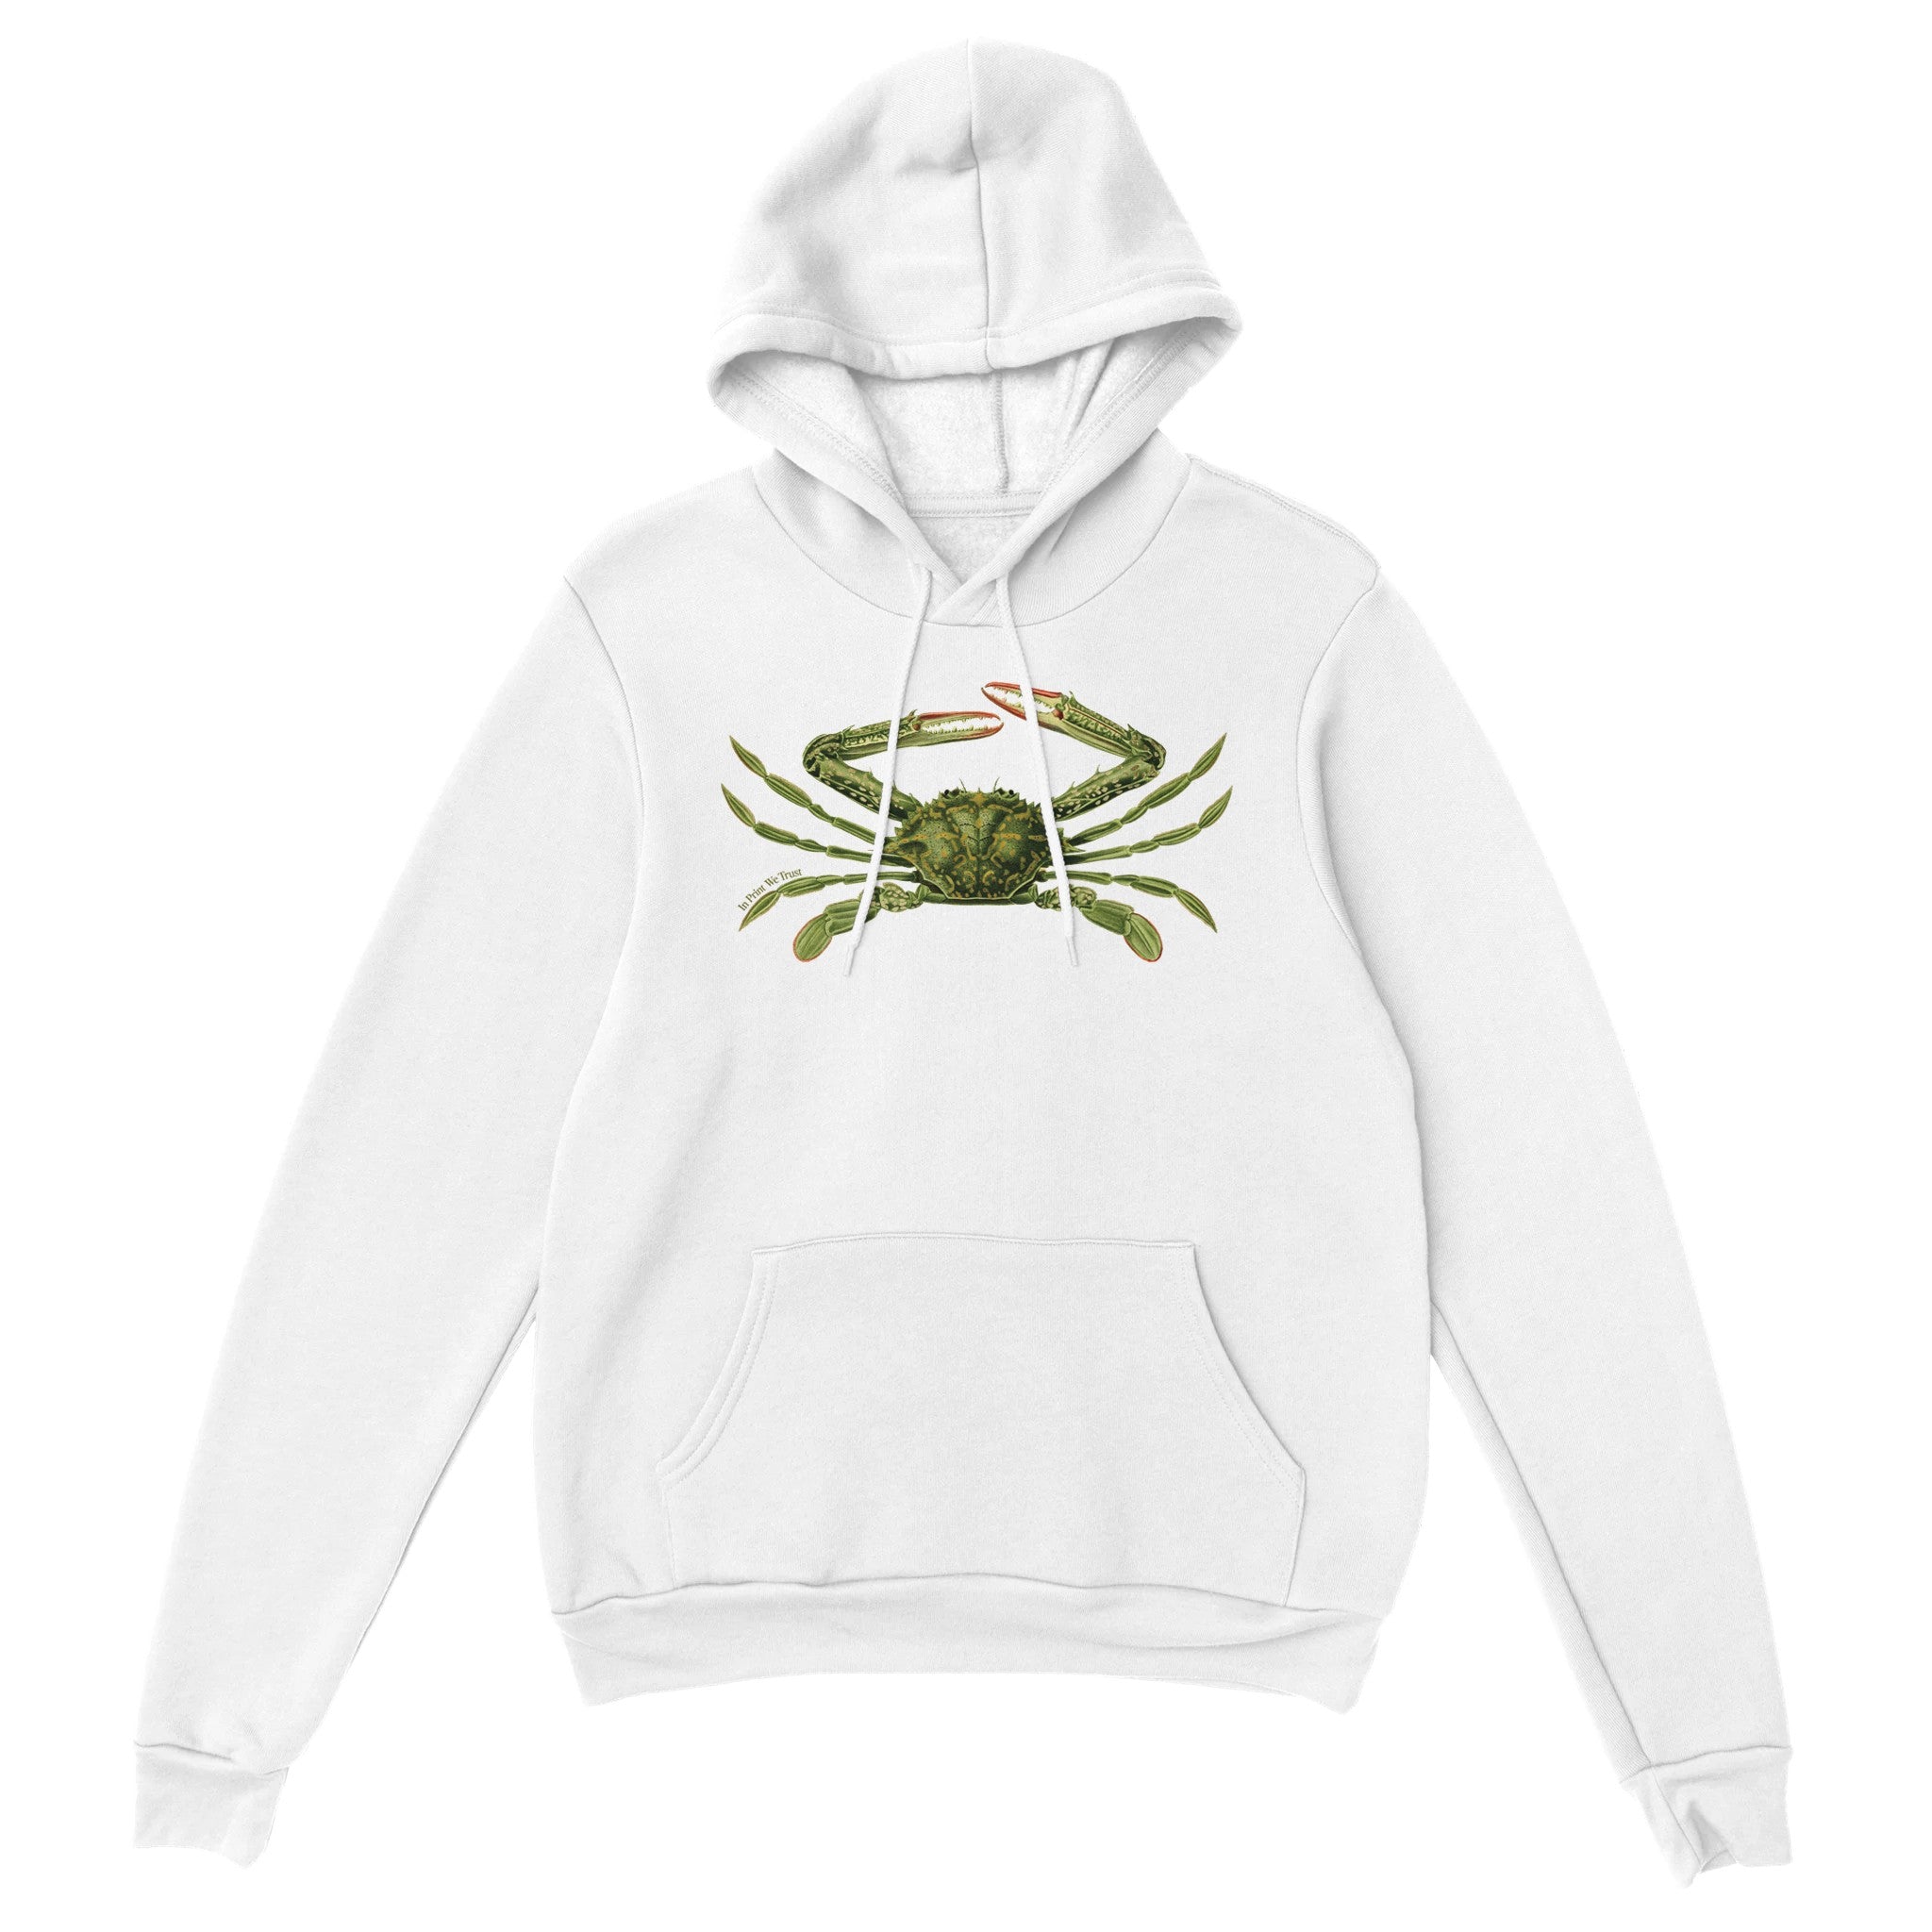 'Crabby' hoodie - In Print We Trust